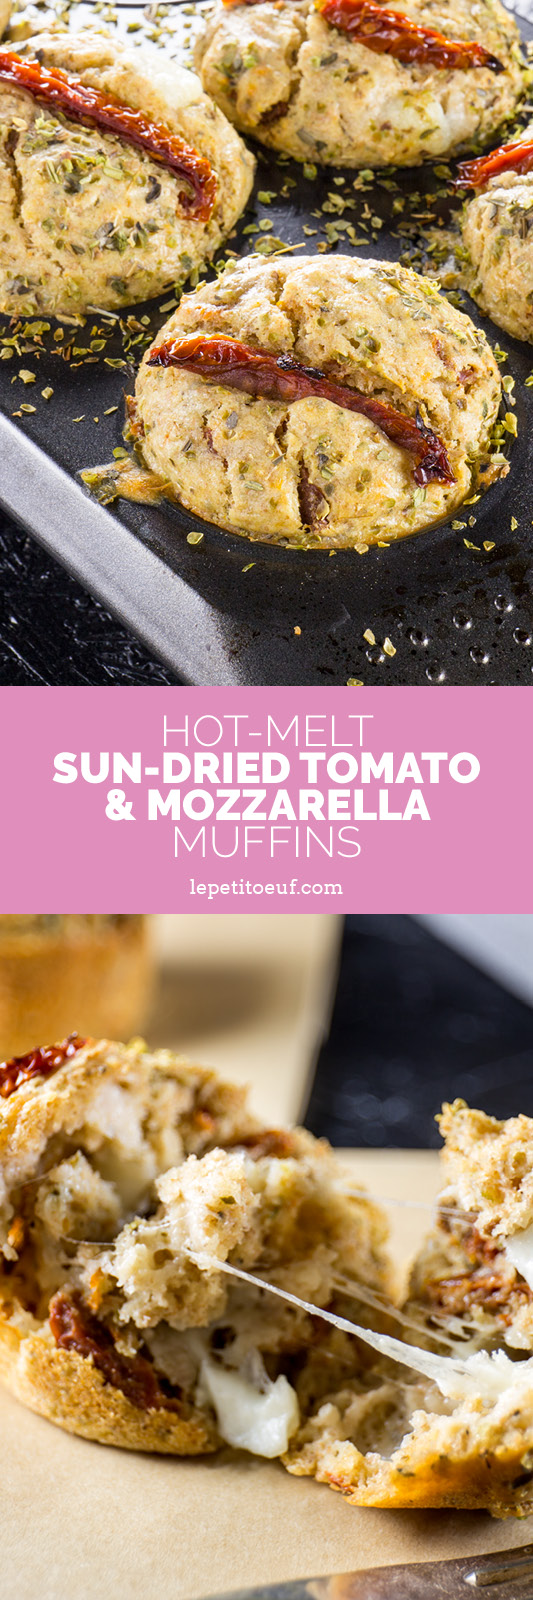 hot melt sun-dried tomato and mozzarella muffins